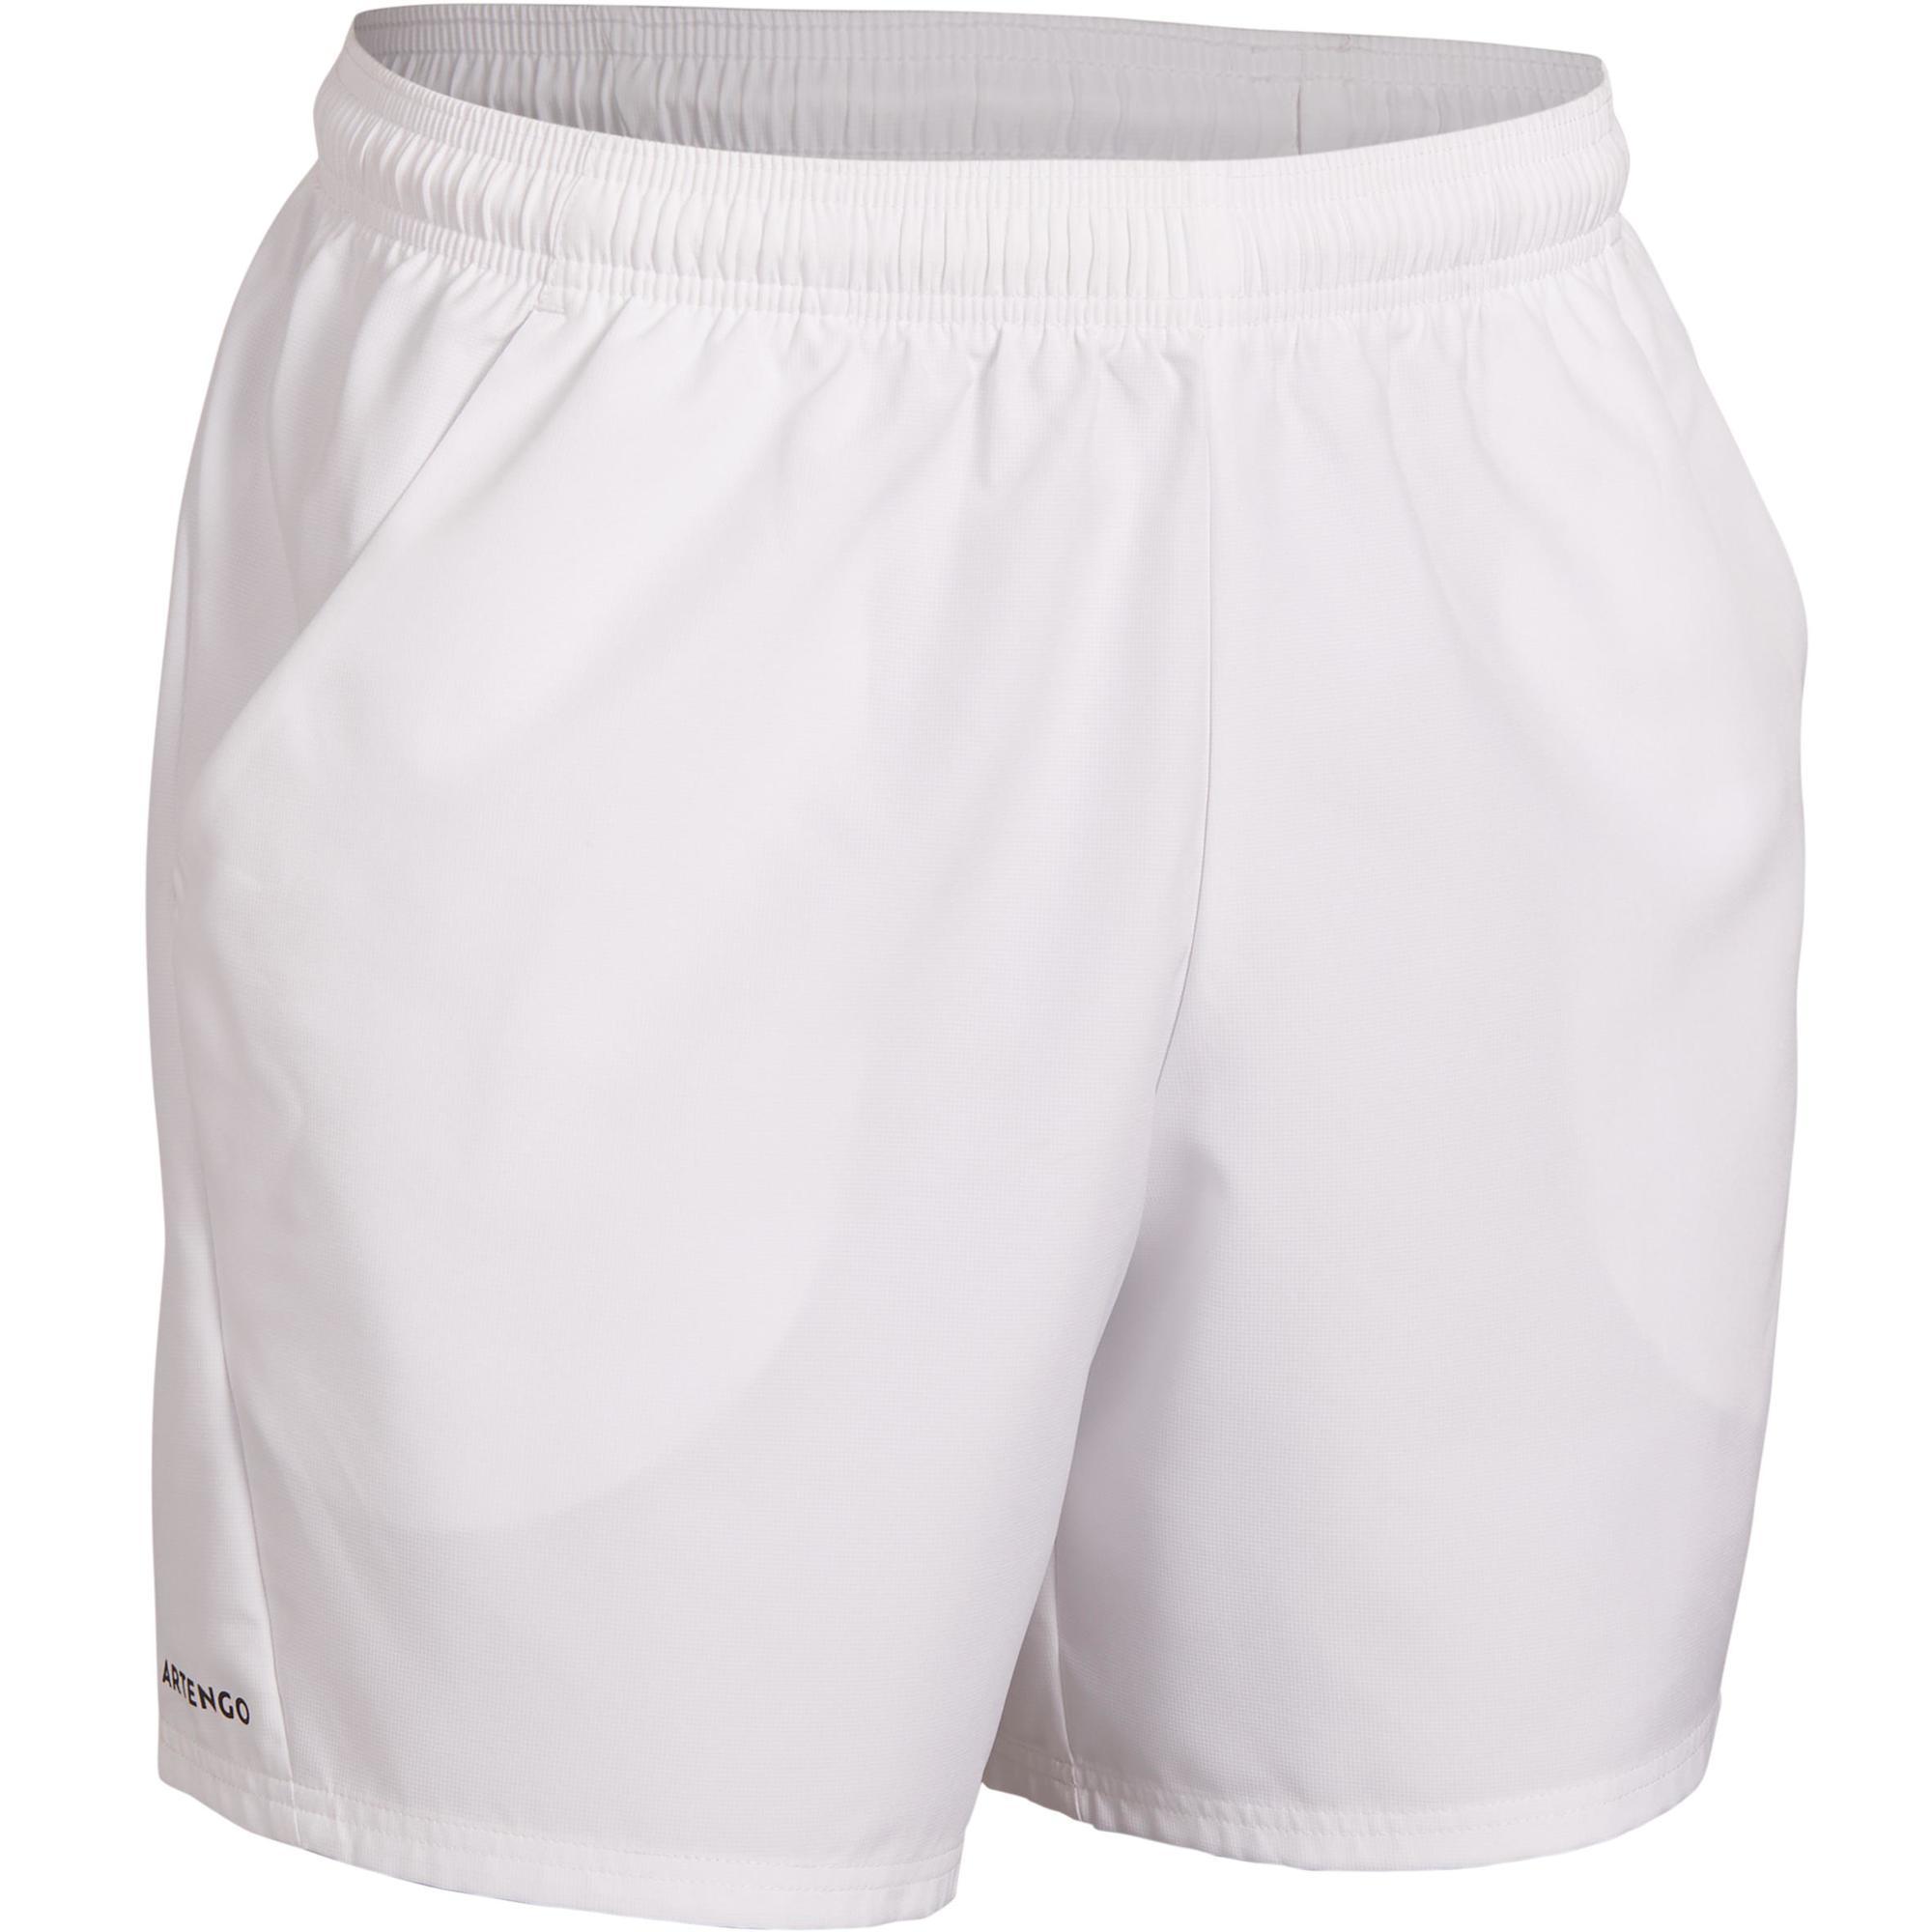 Men's Tennis Shorts Dry Tsh 100 - White • SPORTAIGER